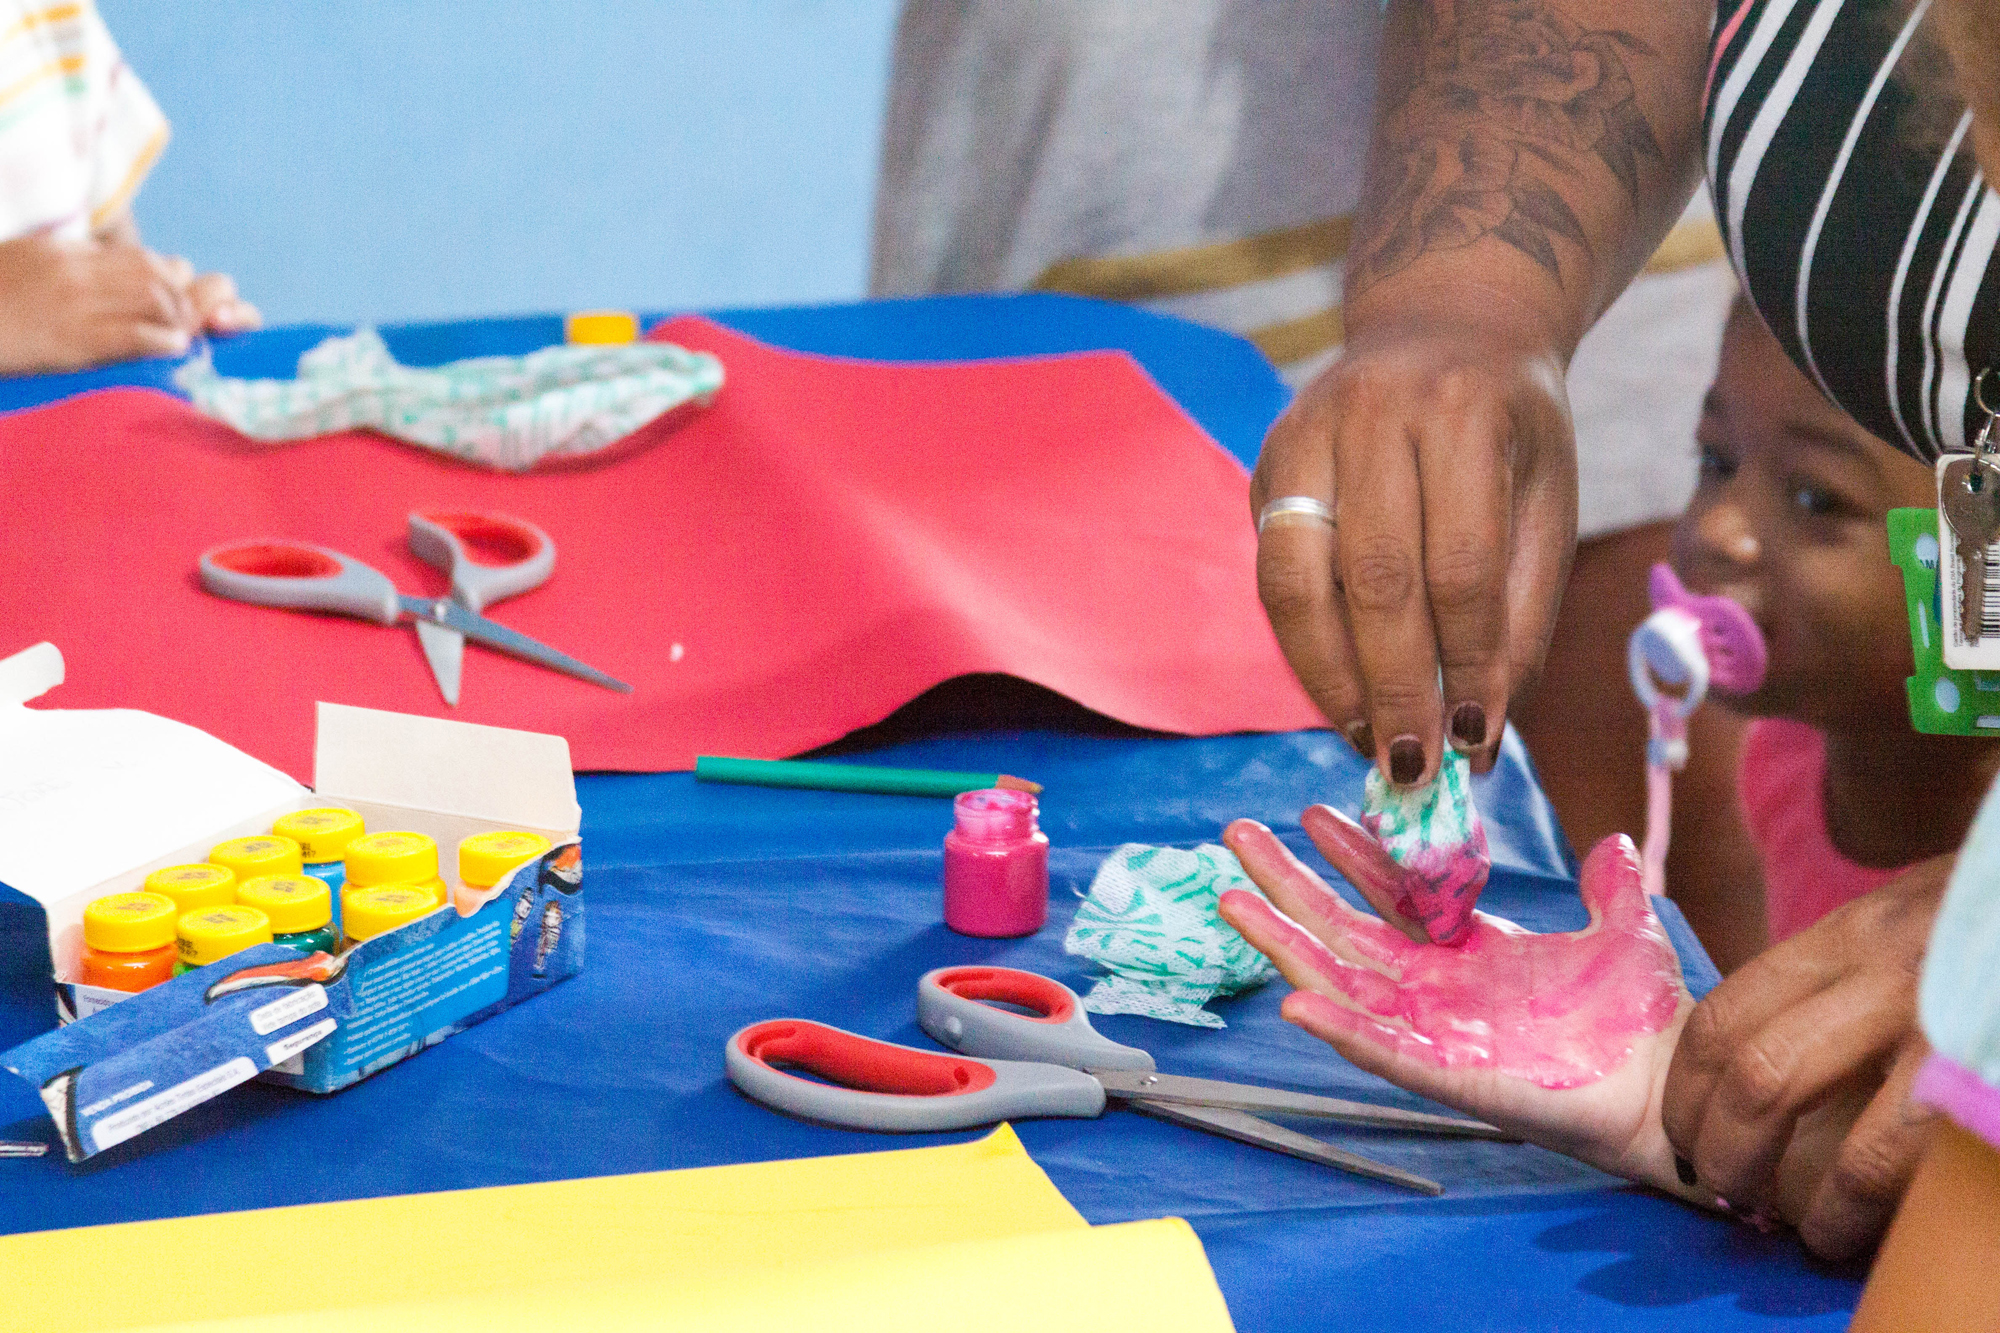 Uma mesa repleta de cartolinas coloridas e tintas guache. Há uma mão feminina auxiliando a pintura da mão de uma criança.